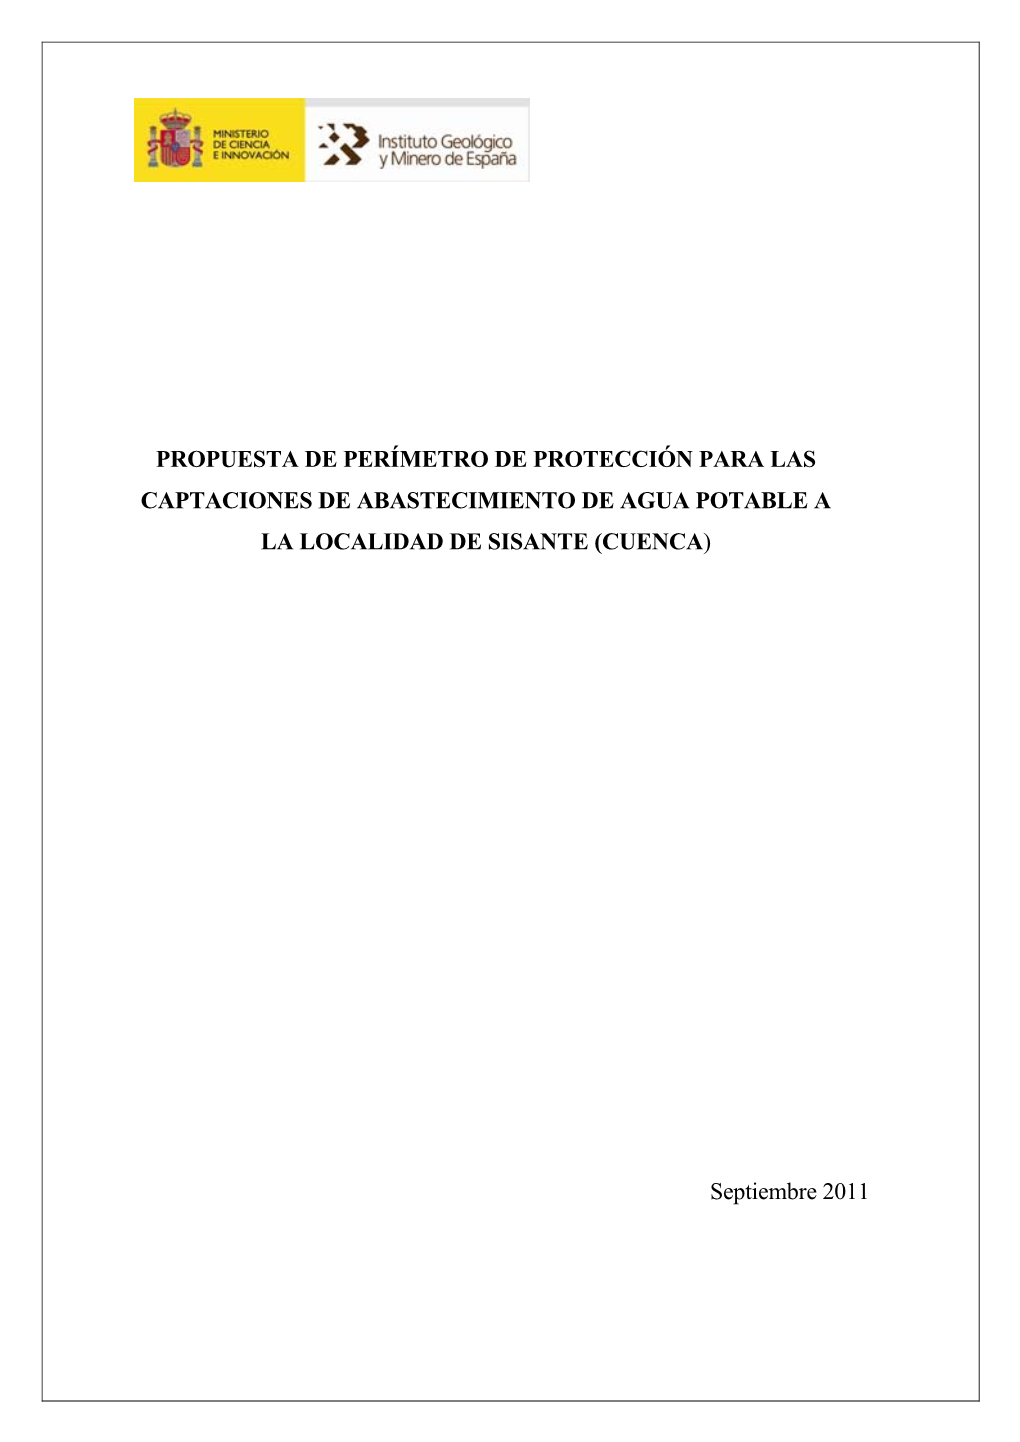 Propuesta De Perímetro De Protección Para Las Captaciones De Abastecimiento De Agua Potable a La Localidad De Sisante (Cuenca)